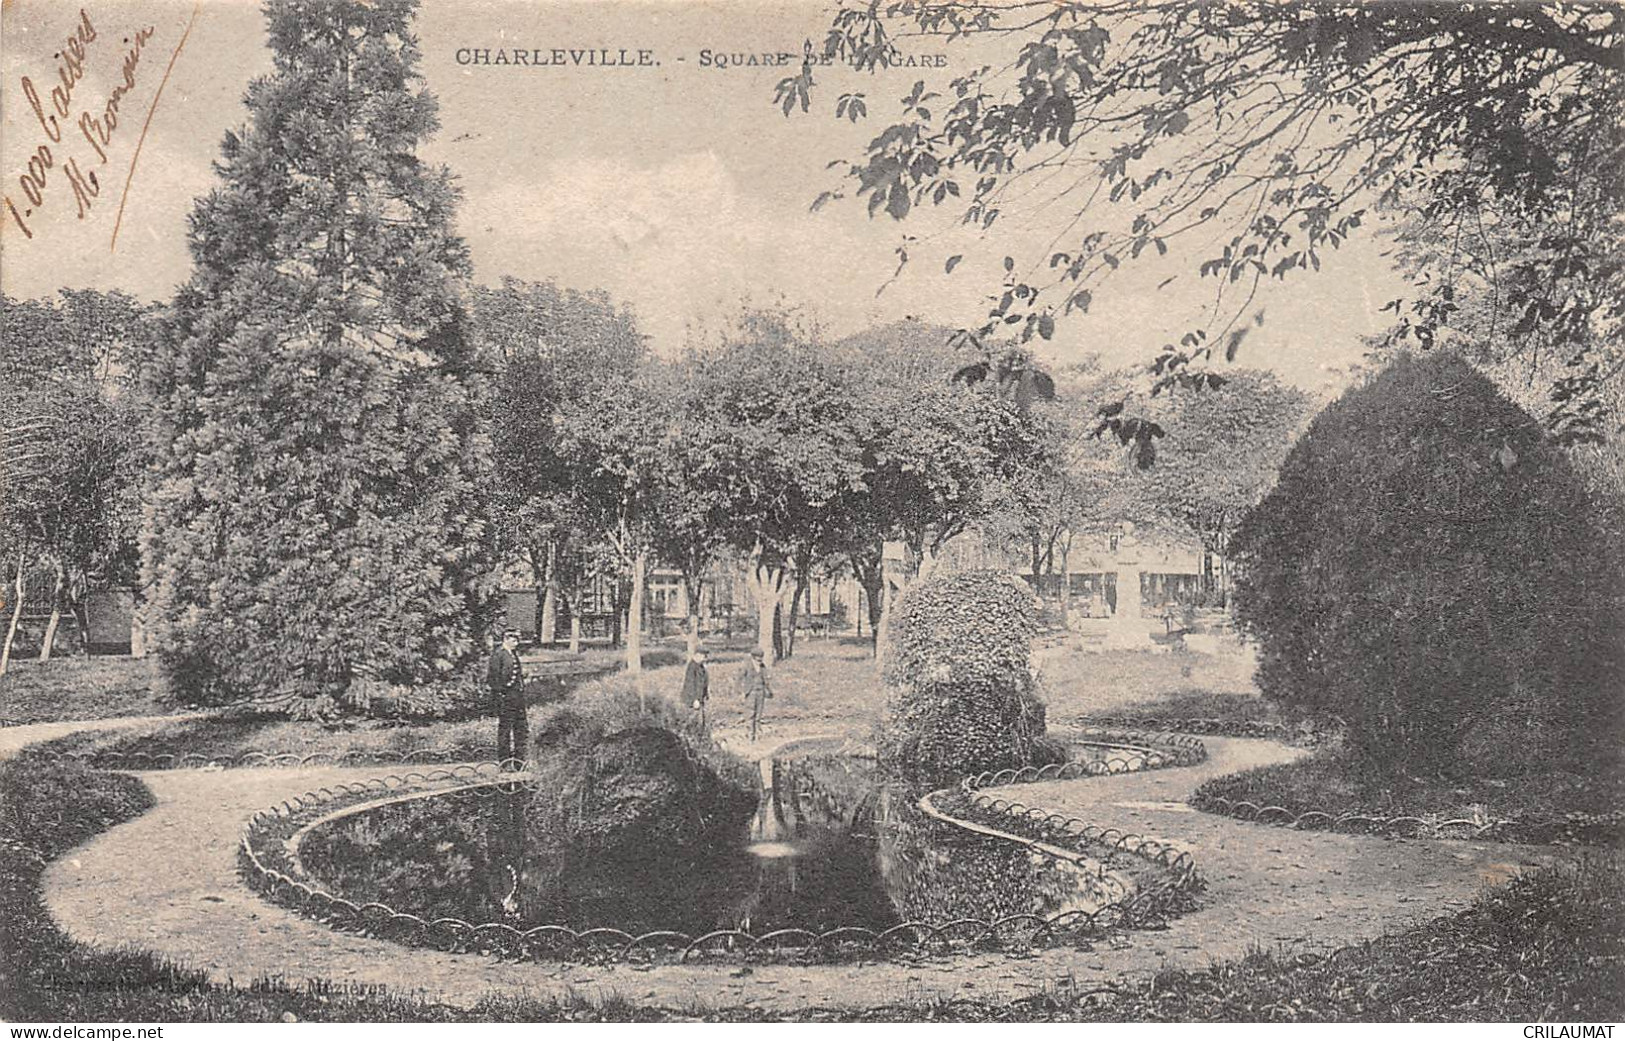 08-CHARLEVILLE-SQUARE BIAS-N 6002-G/0249 - Charleville